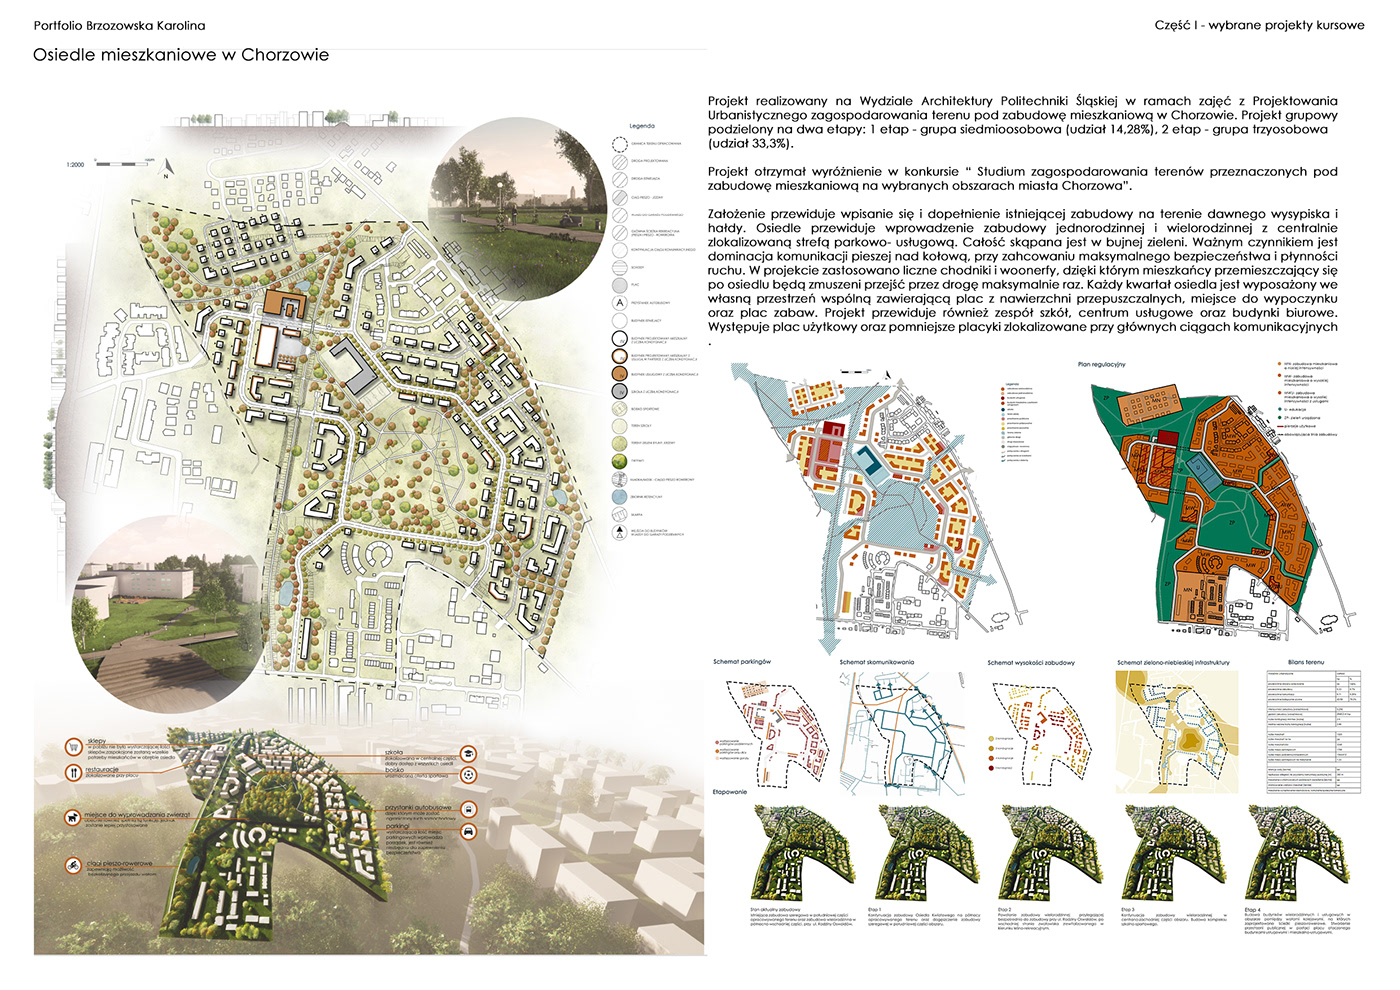 architecture urbanistyka urban planning Masterplan Urban Design Landscape Architecture  design residential complex spatial planning